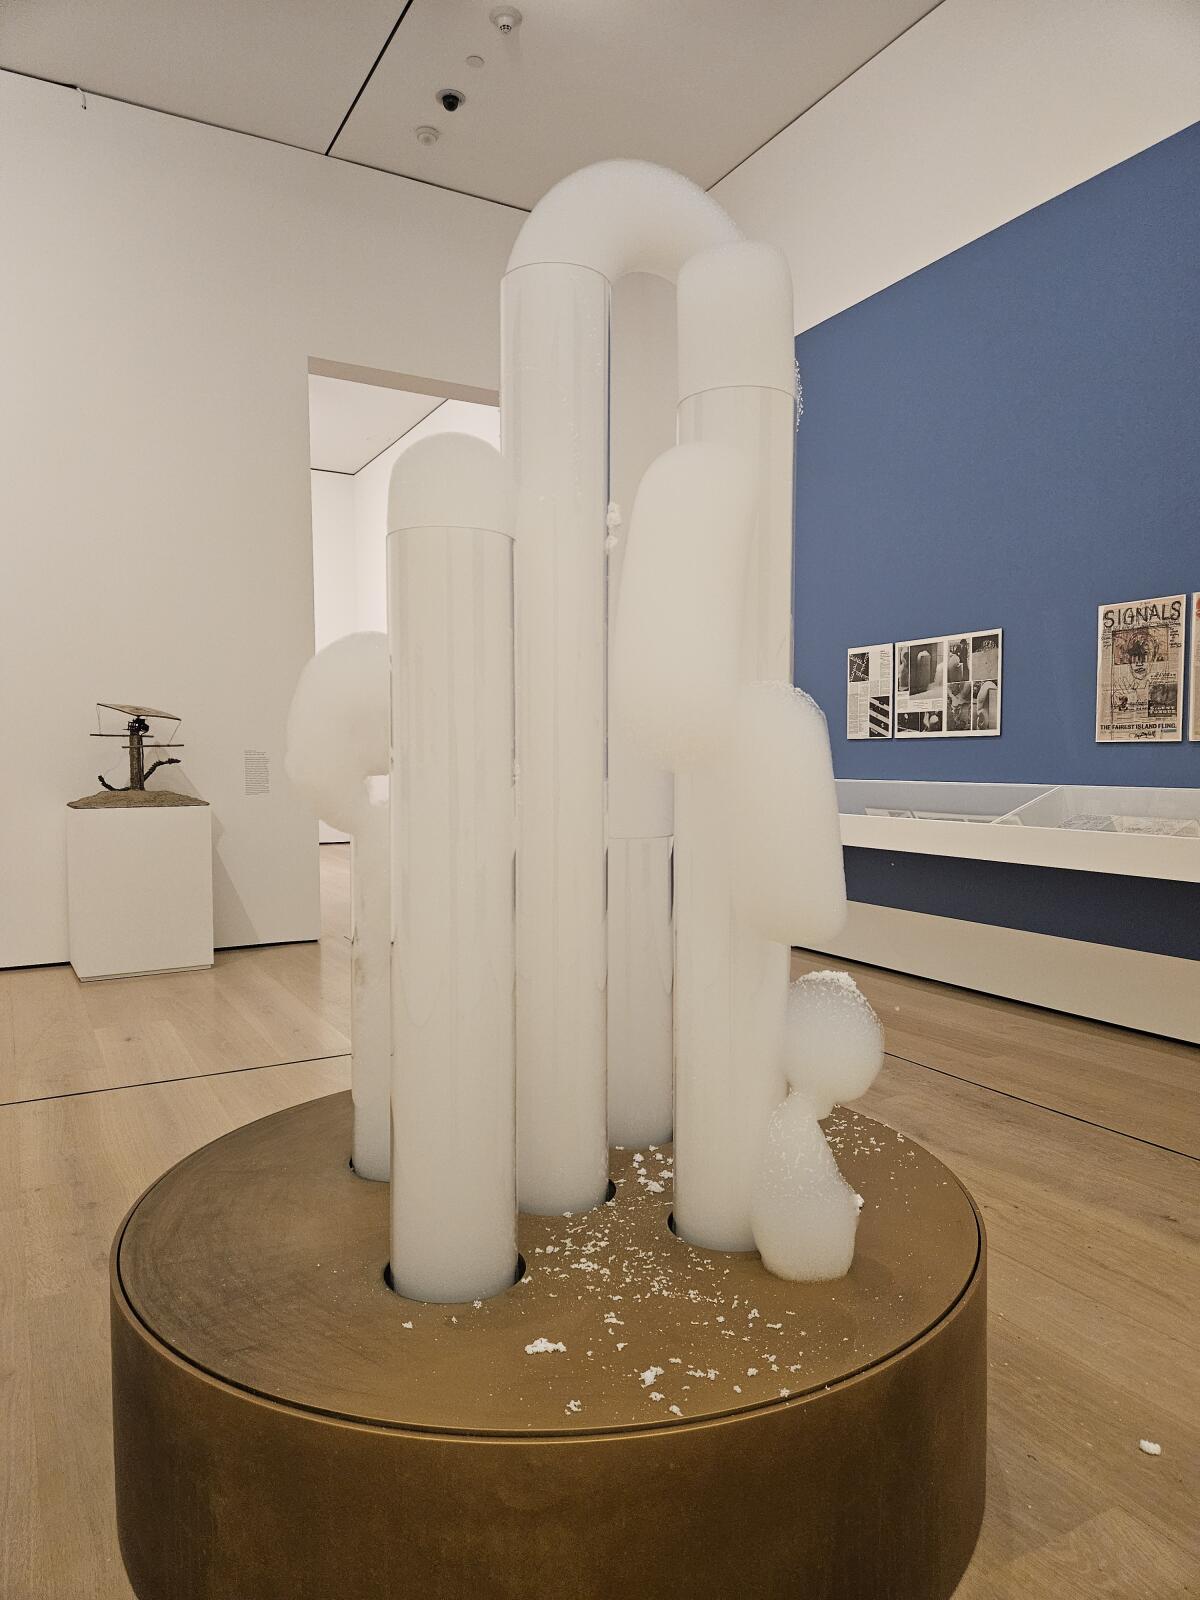 David Medalla's erupting soap-bubble sculptures, "Cloud Canyon." 